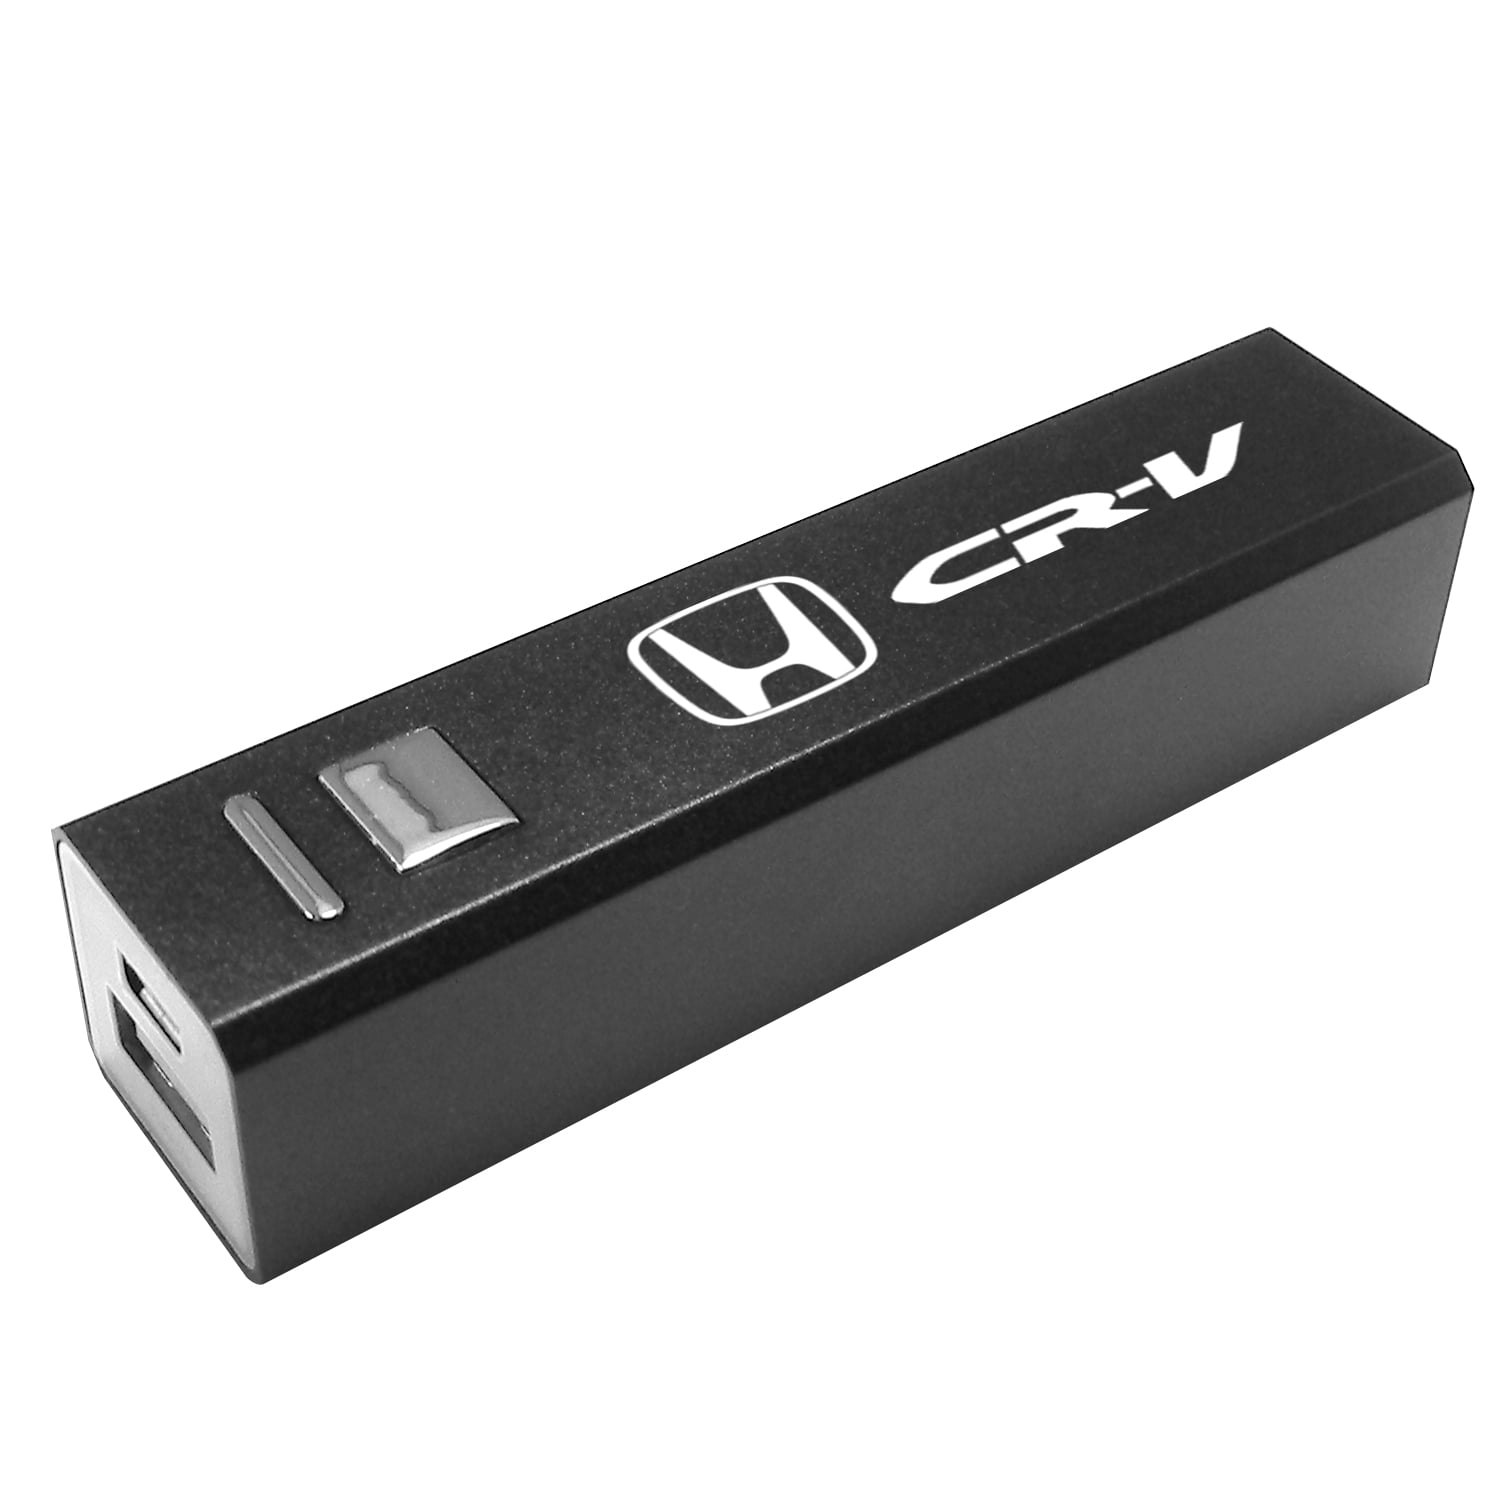 Honda CRV Black Porable USB Power Bank Backup Battery Charger for Cell